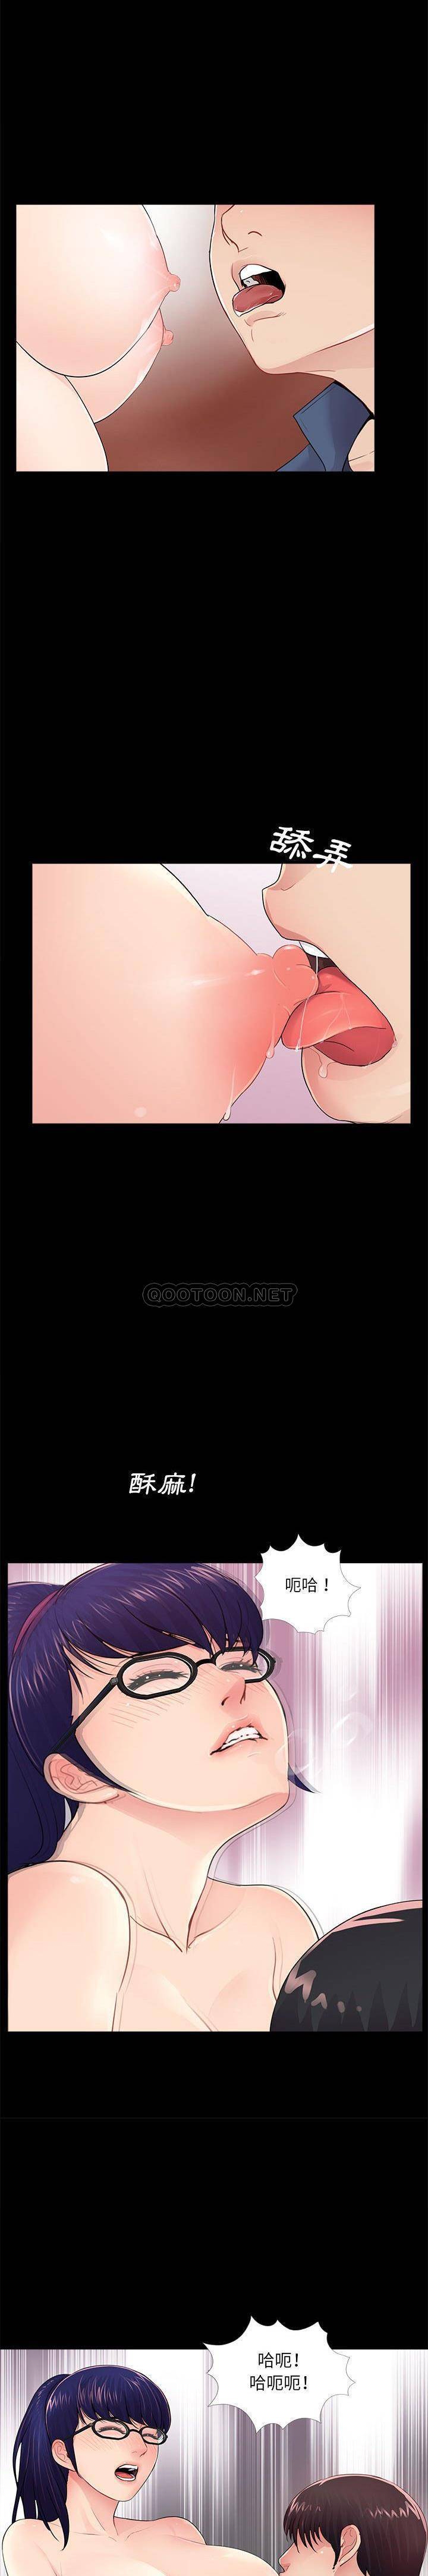 韩国污漫画 神秘復學生 第9话 9